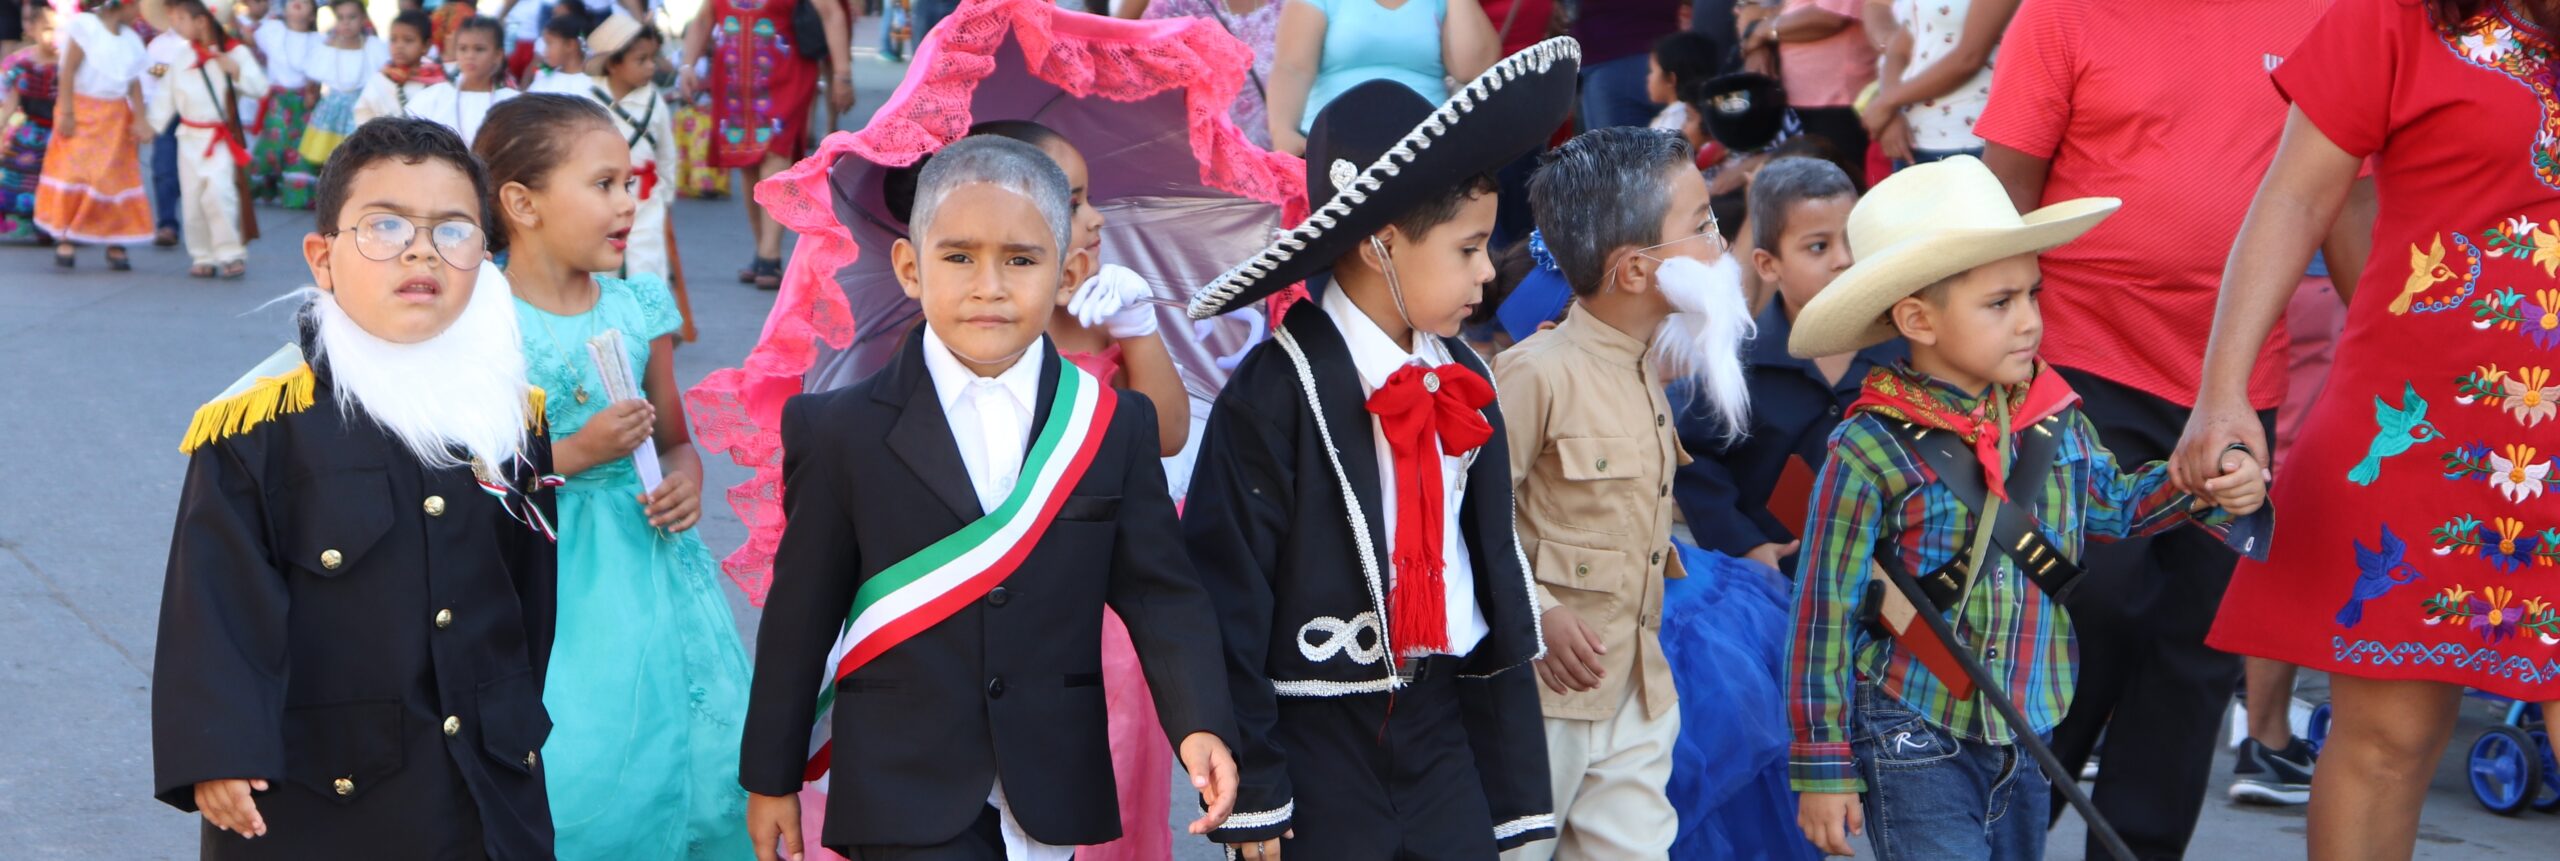 Desfilan guarderías y jardines de niños previo a la conmemoración de la  Revolución Mexicana. – Escuinapa